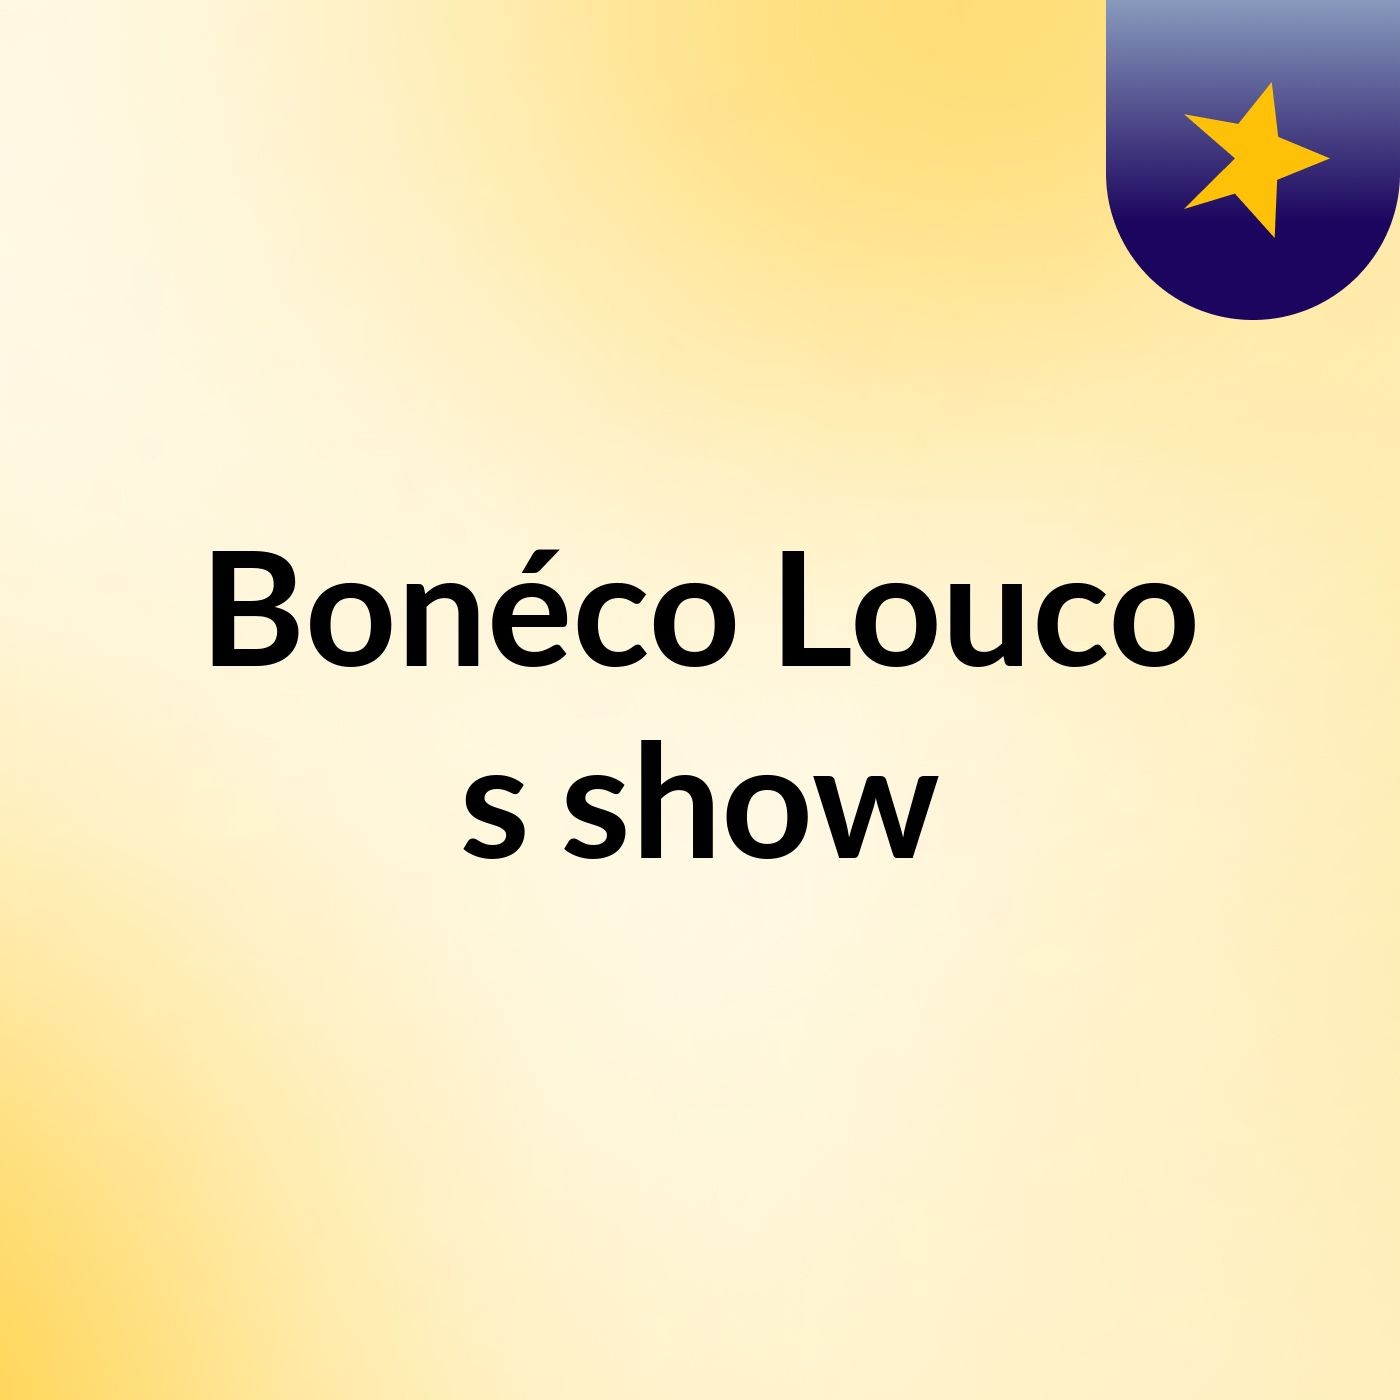 Bonéco Louco's show